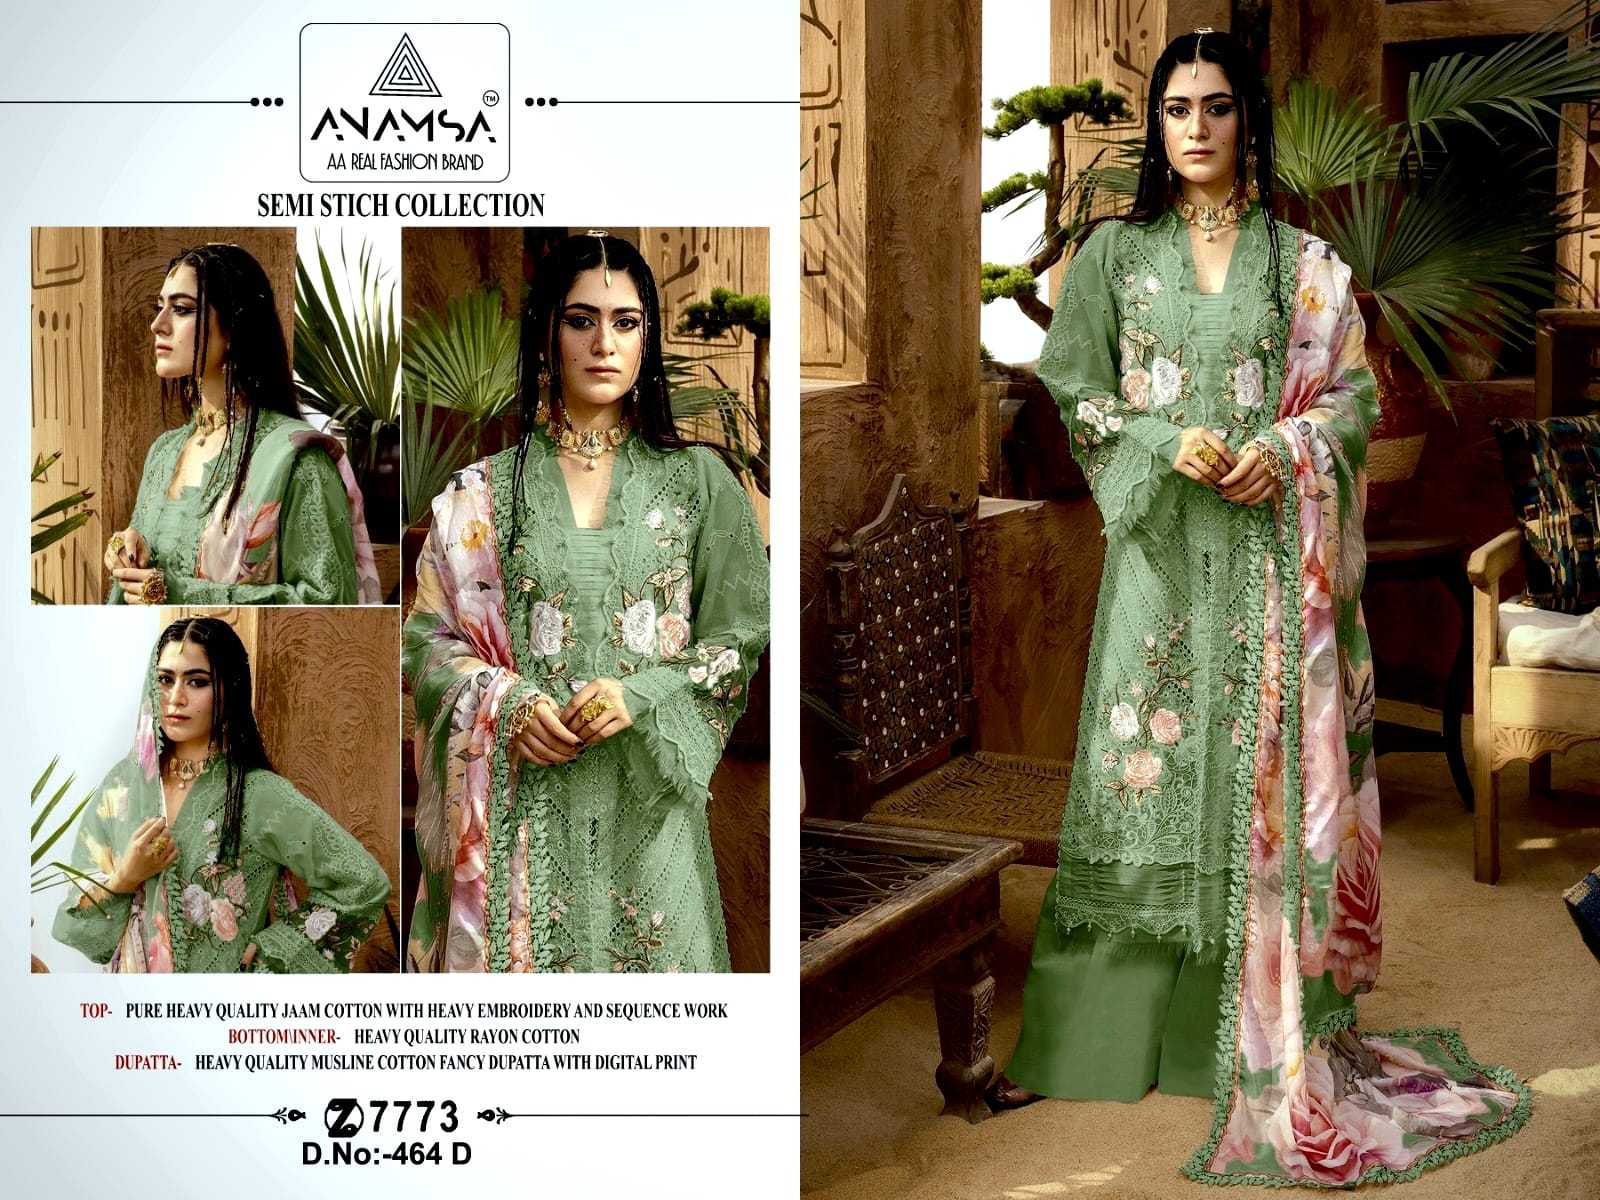 Anamsa 464 A To D Jam Cotton Salwar Suit Wholesale catalog